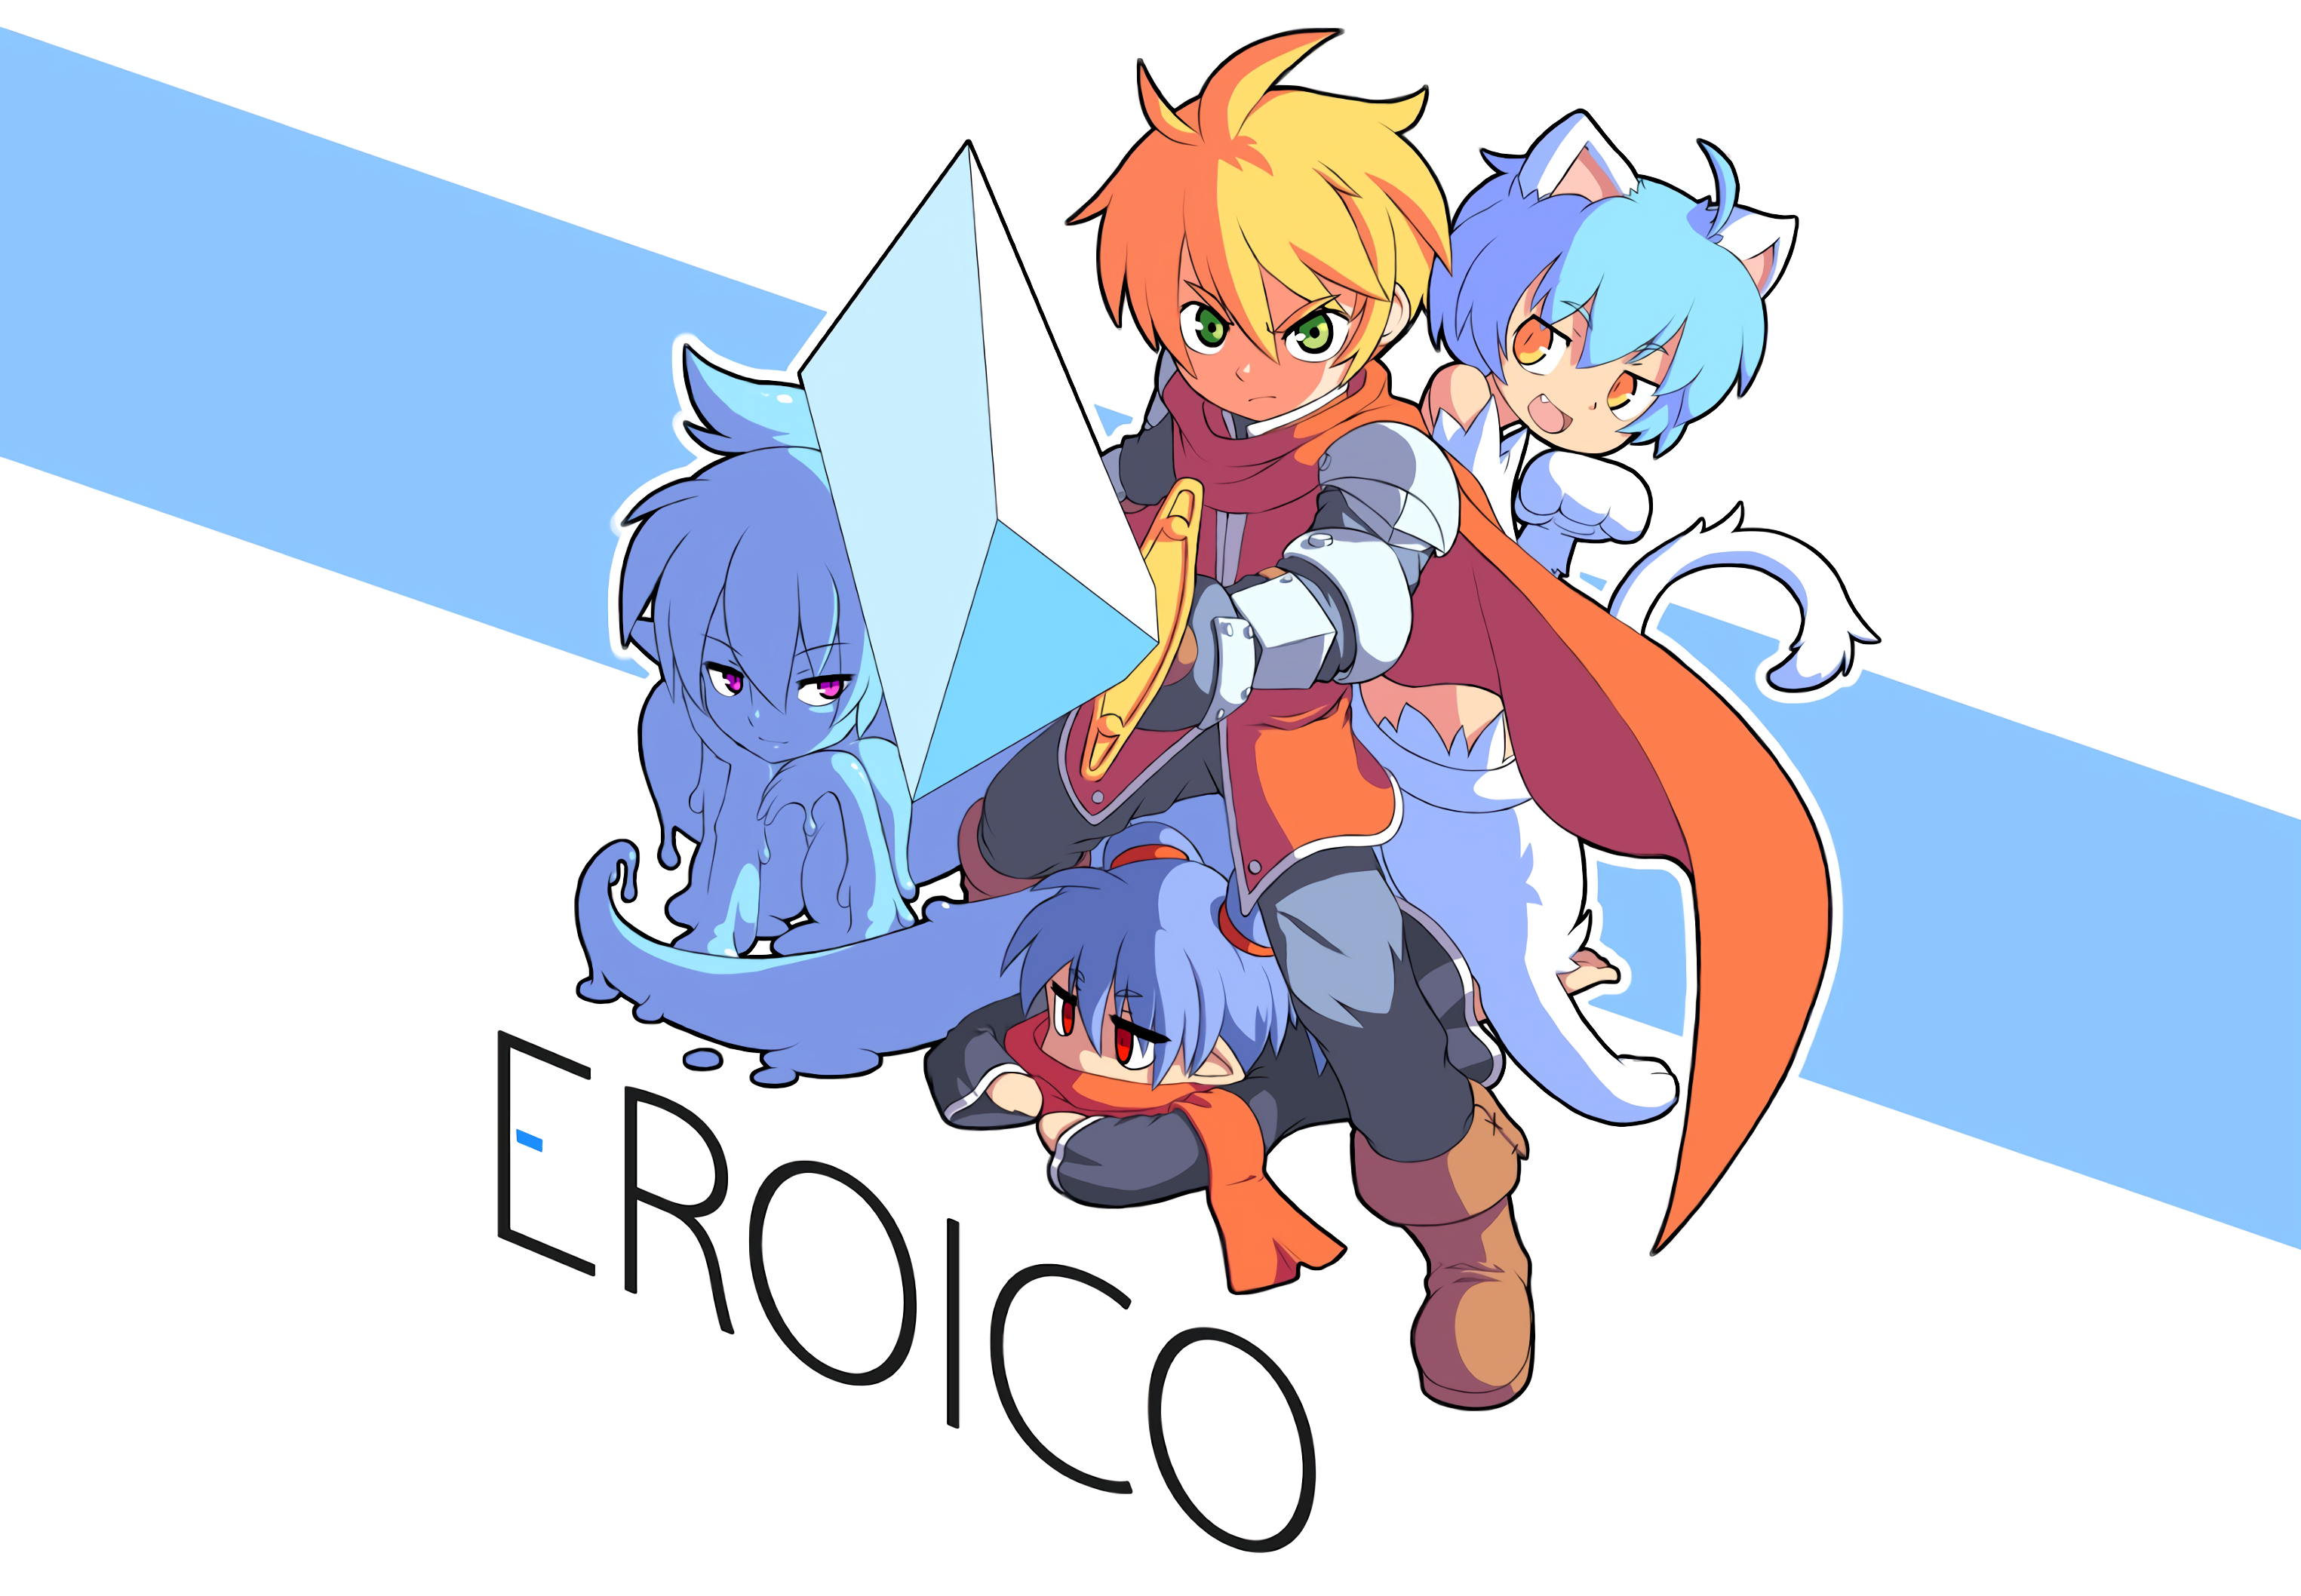 Eroico Cgs